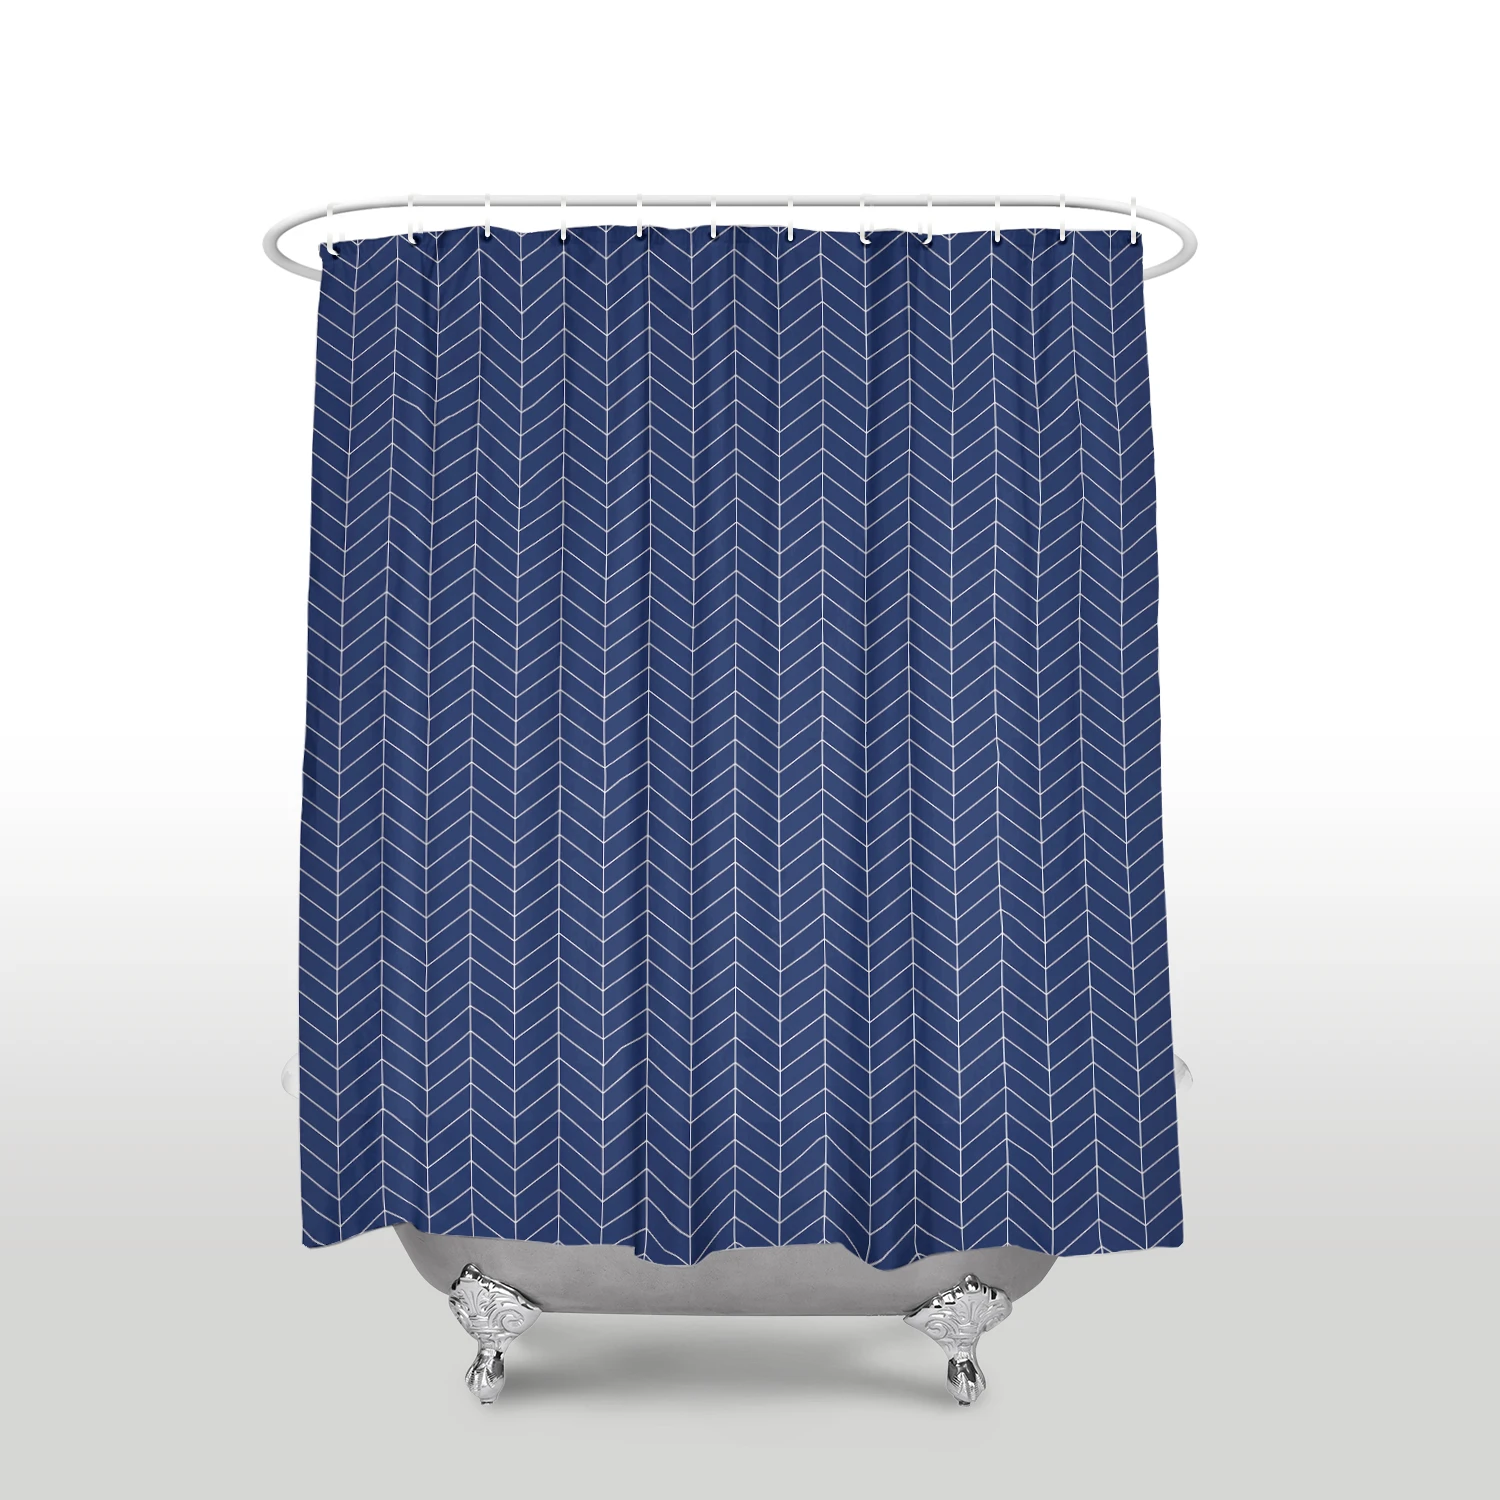 VinMea Eucalyptus Polyester Waterproof Fabric Bath Curtain with Hooks,Shower Curtain For Bathroom Decor 72 X 72